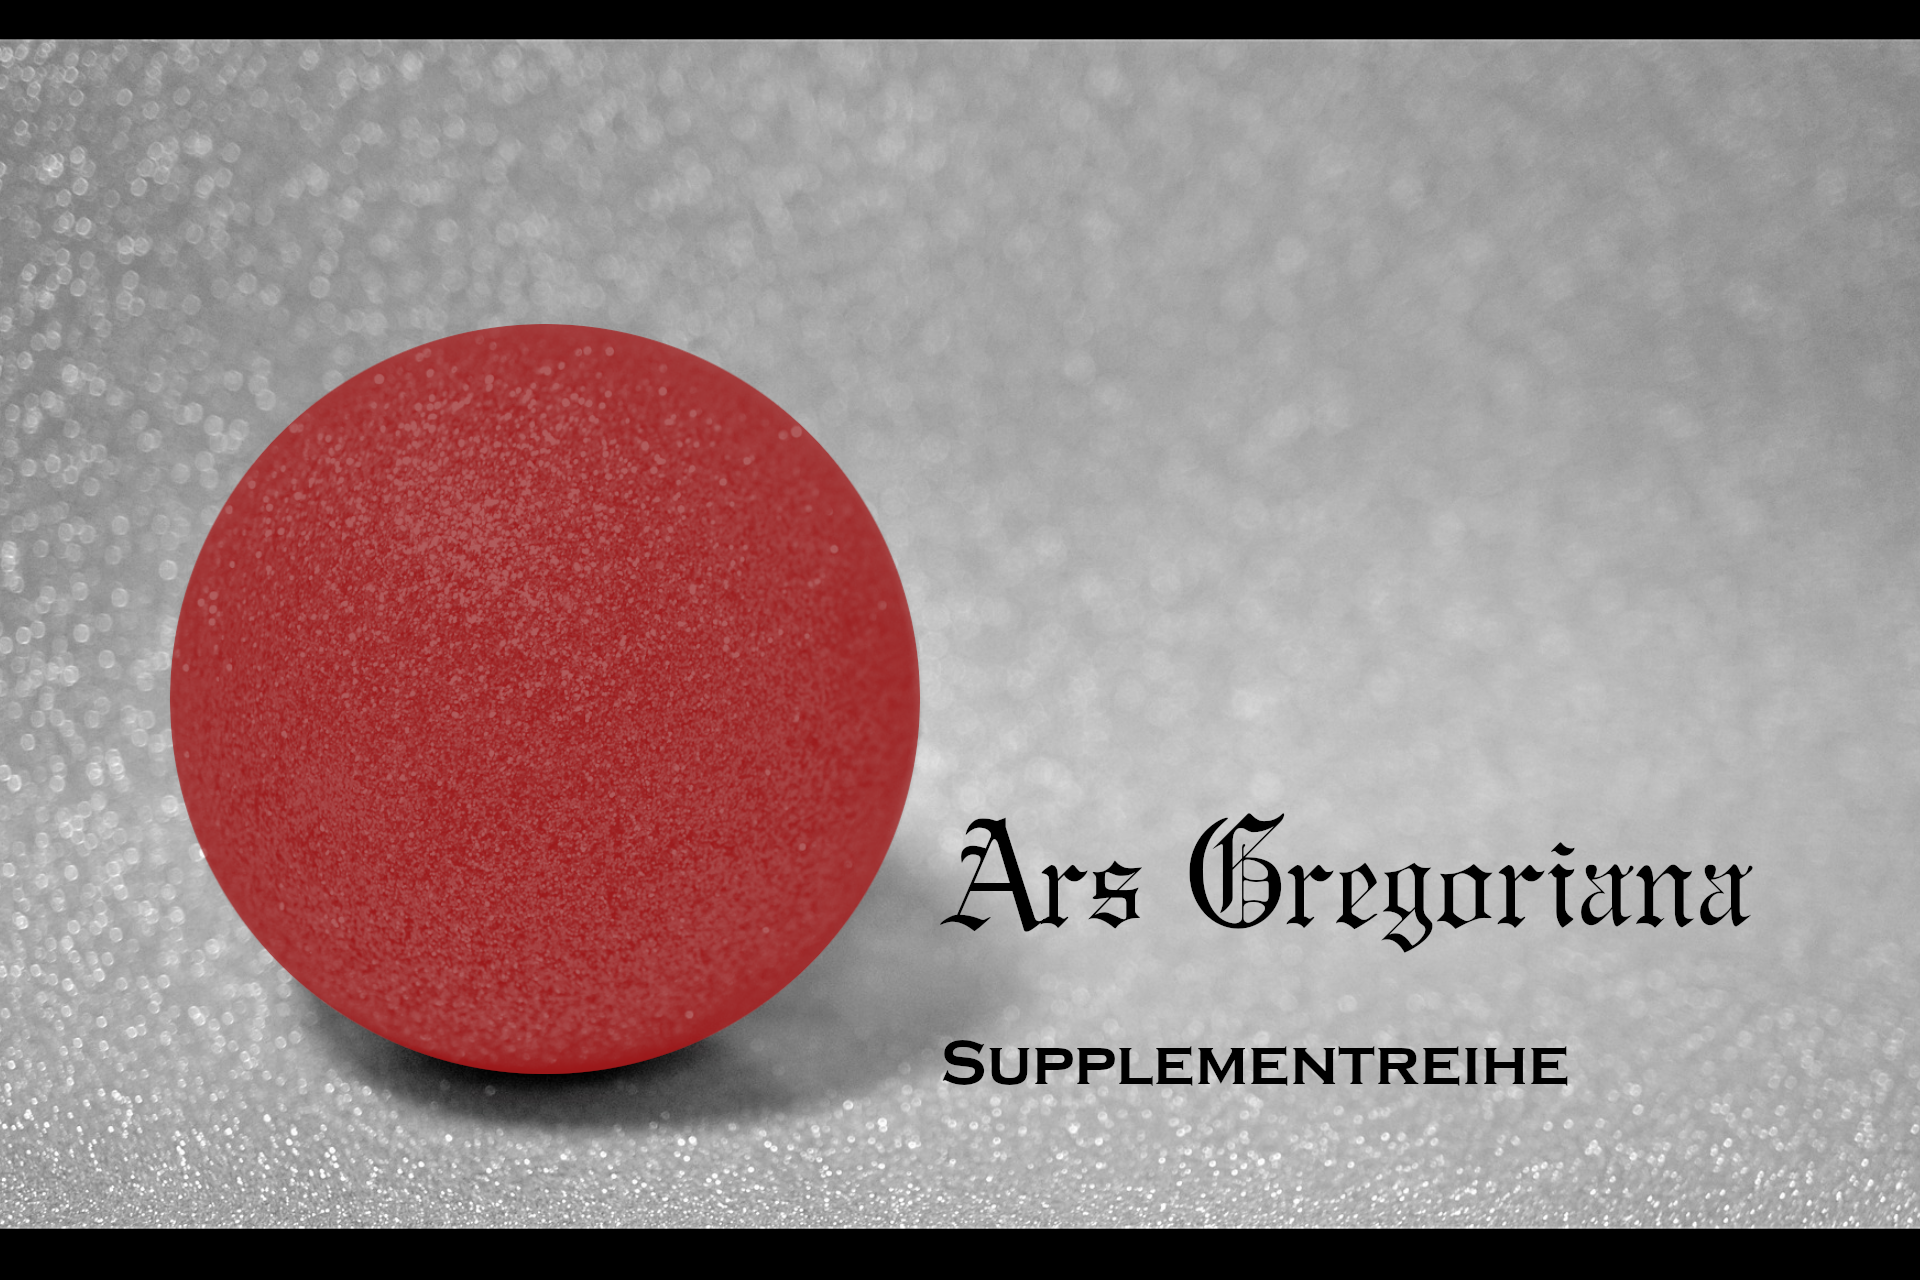 Ars Gregoriana Supplementreihe